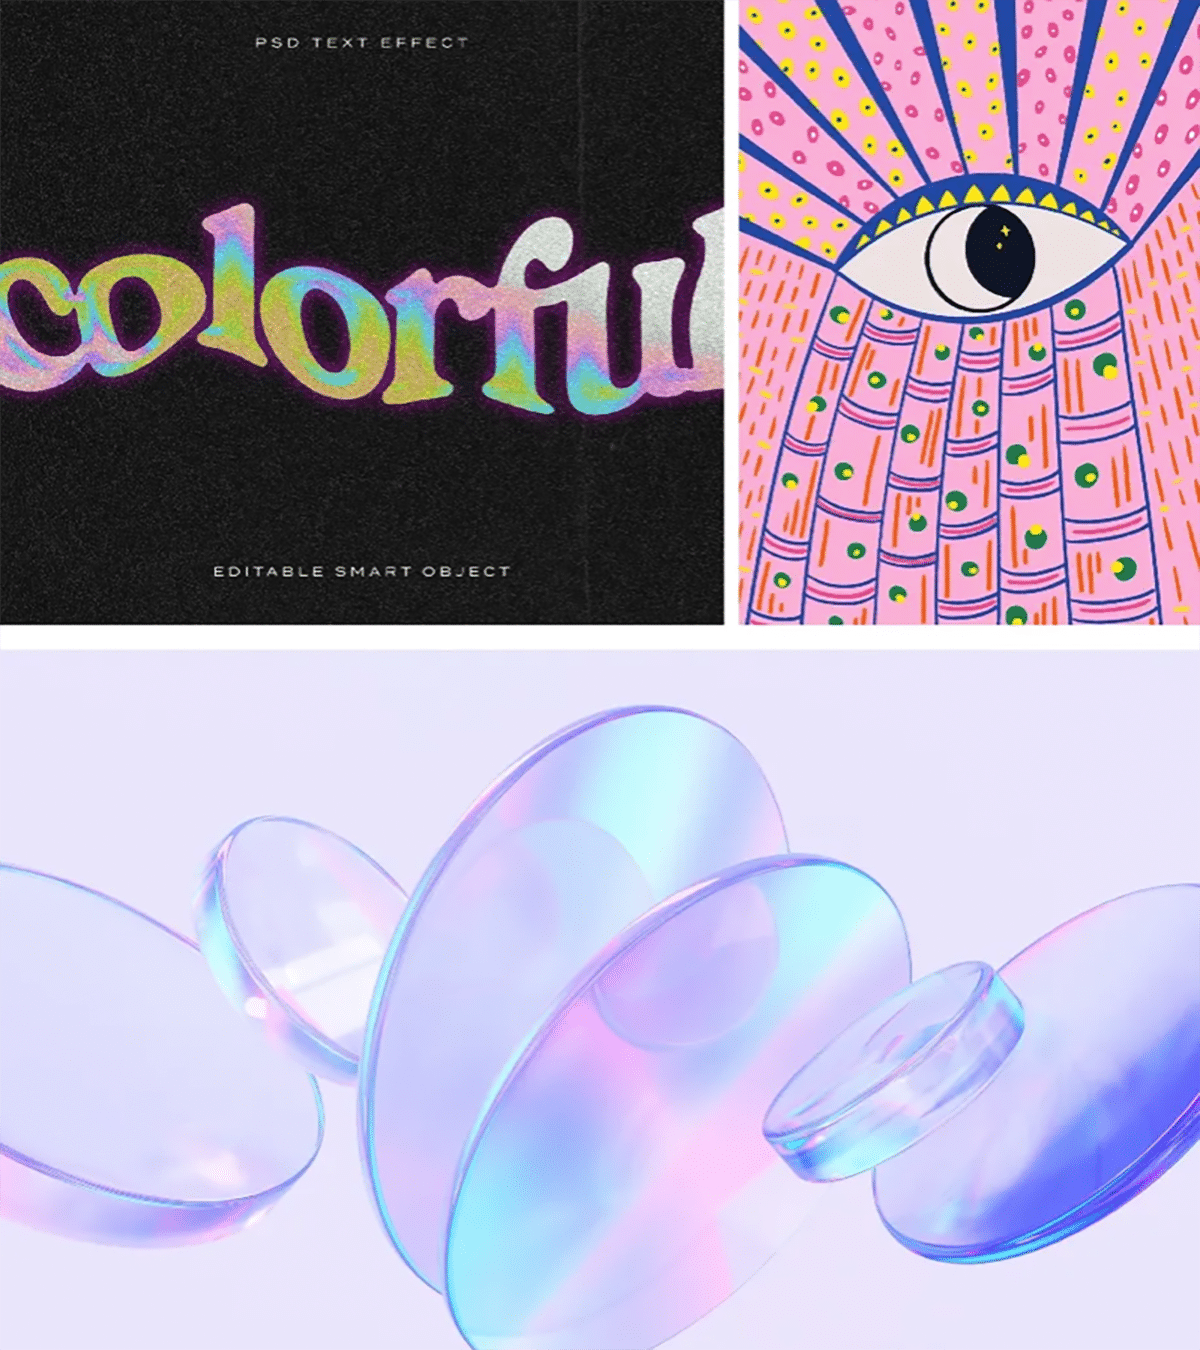 Oben: Grafik mit dem Wort 'colorful' in einem mehrfarbigen Texteffekt auf schwarzem Hintergrund neben einer Illustration eines Auges mit Strahlenmuster. Unten: Mehrere durchsichtige, schillernde Seifenblasen auf hellem Hintergrund.